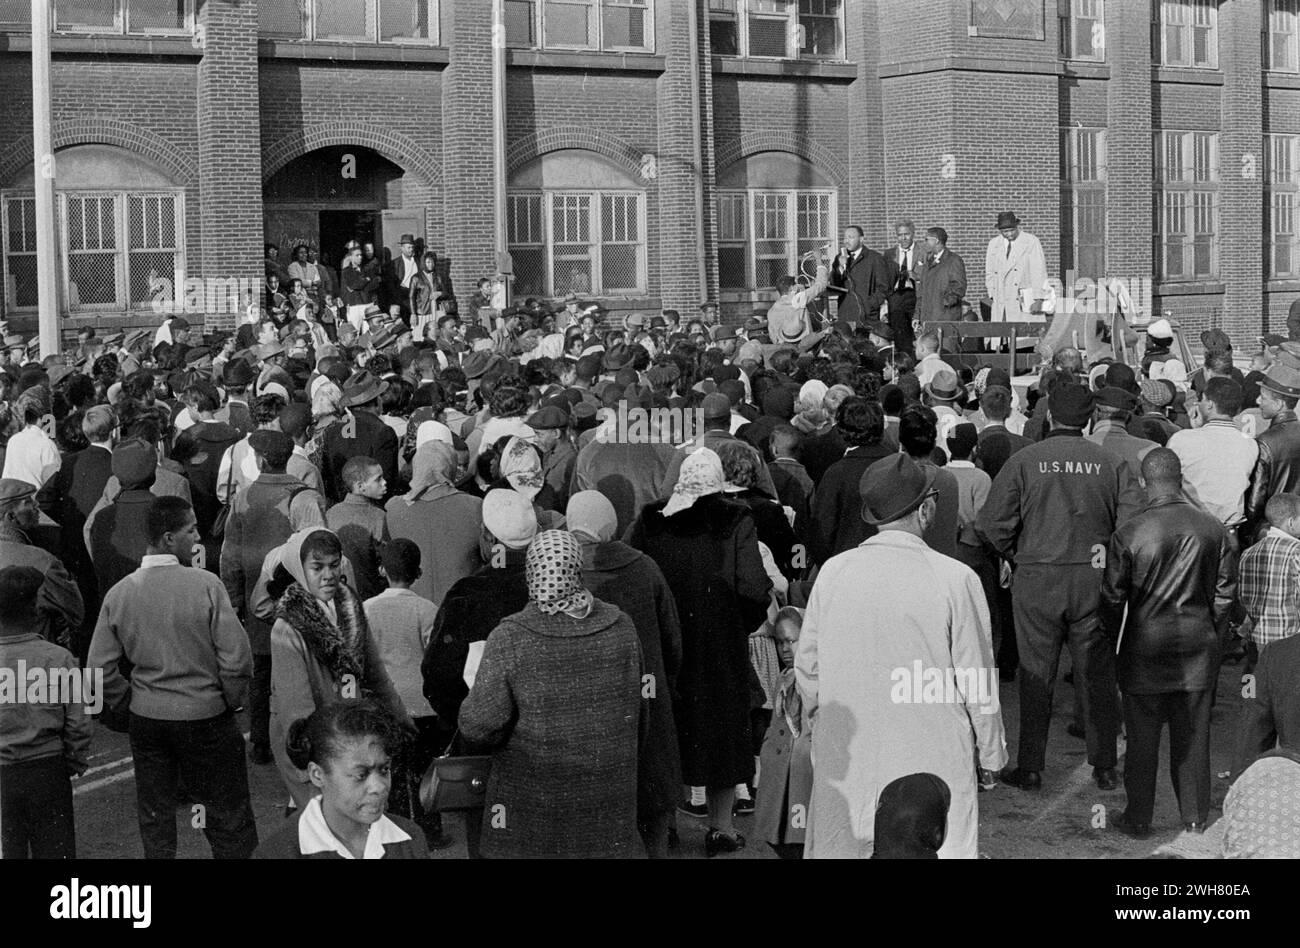 Il dottor King parla alla folla durante una pacifica protesta per i diritti civili negli anni '1960 a Chicago Foto Stock